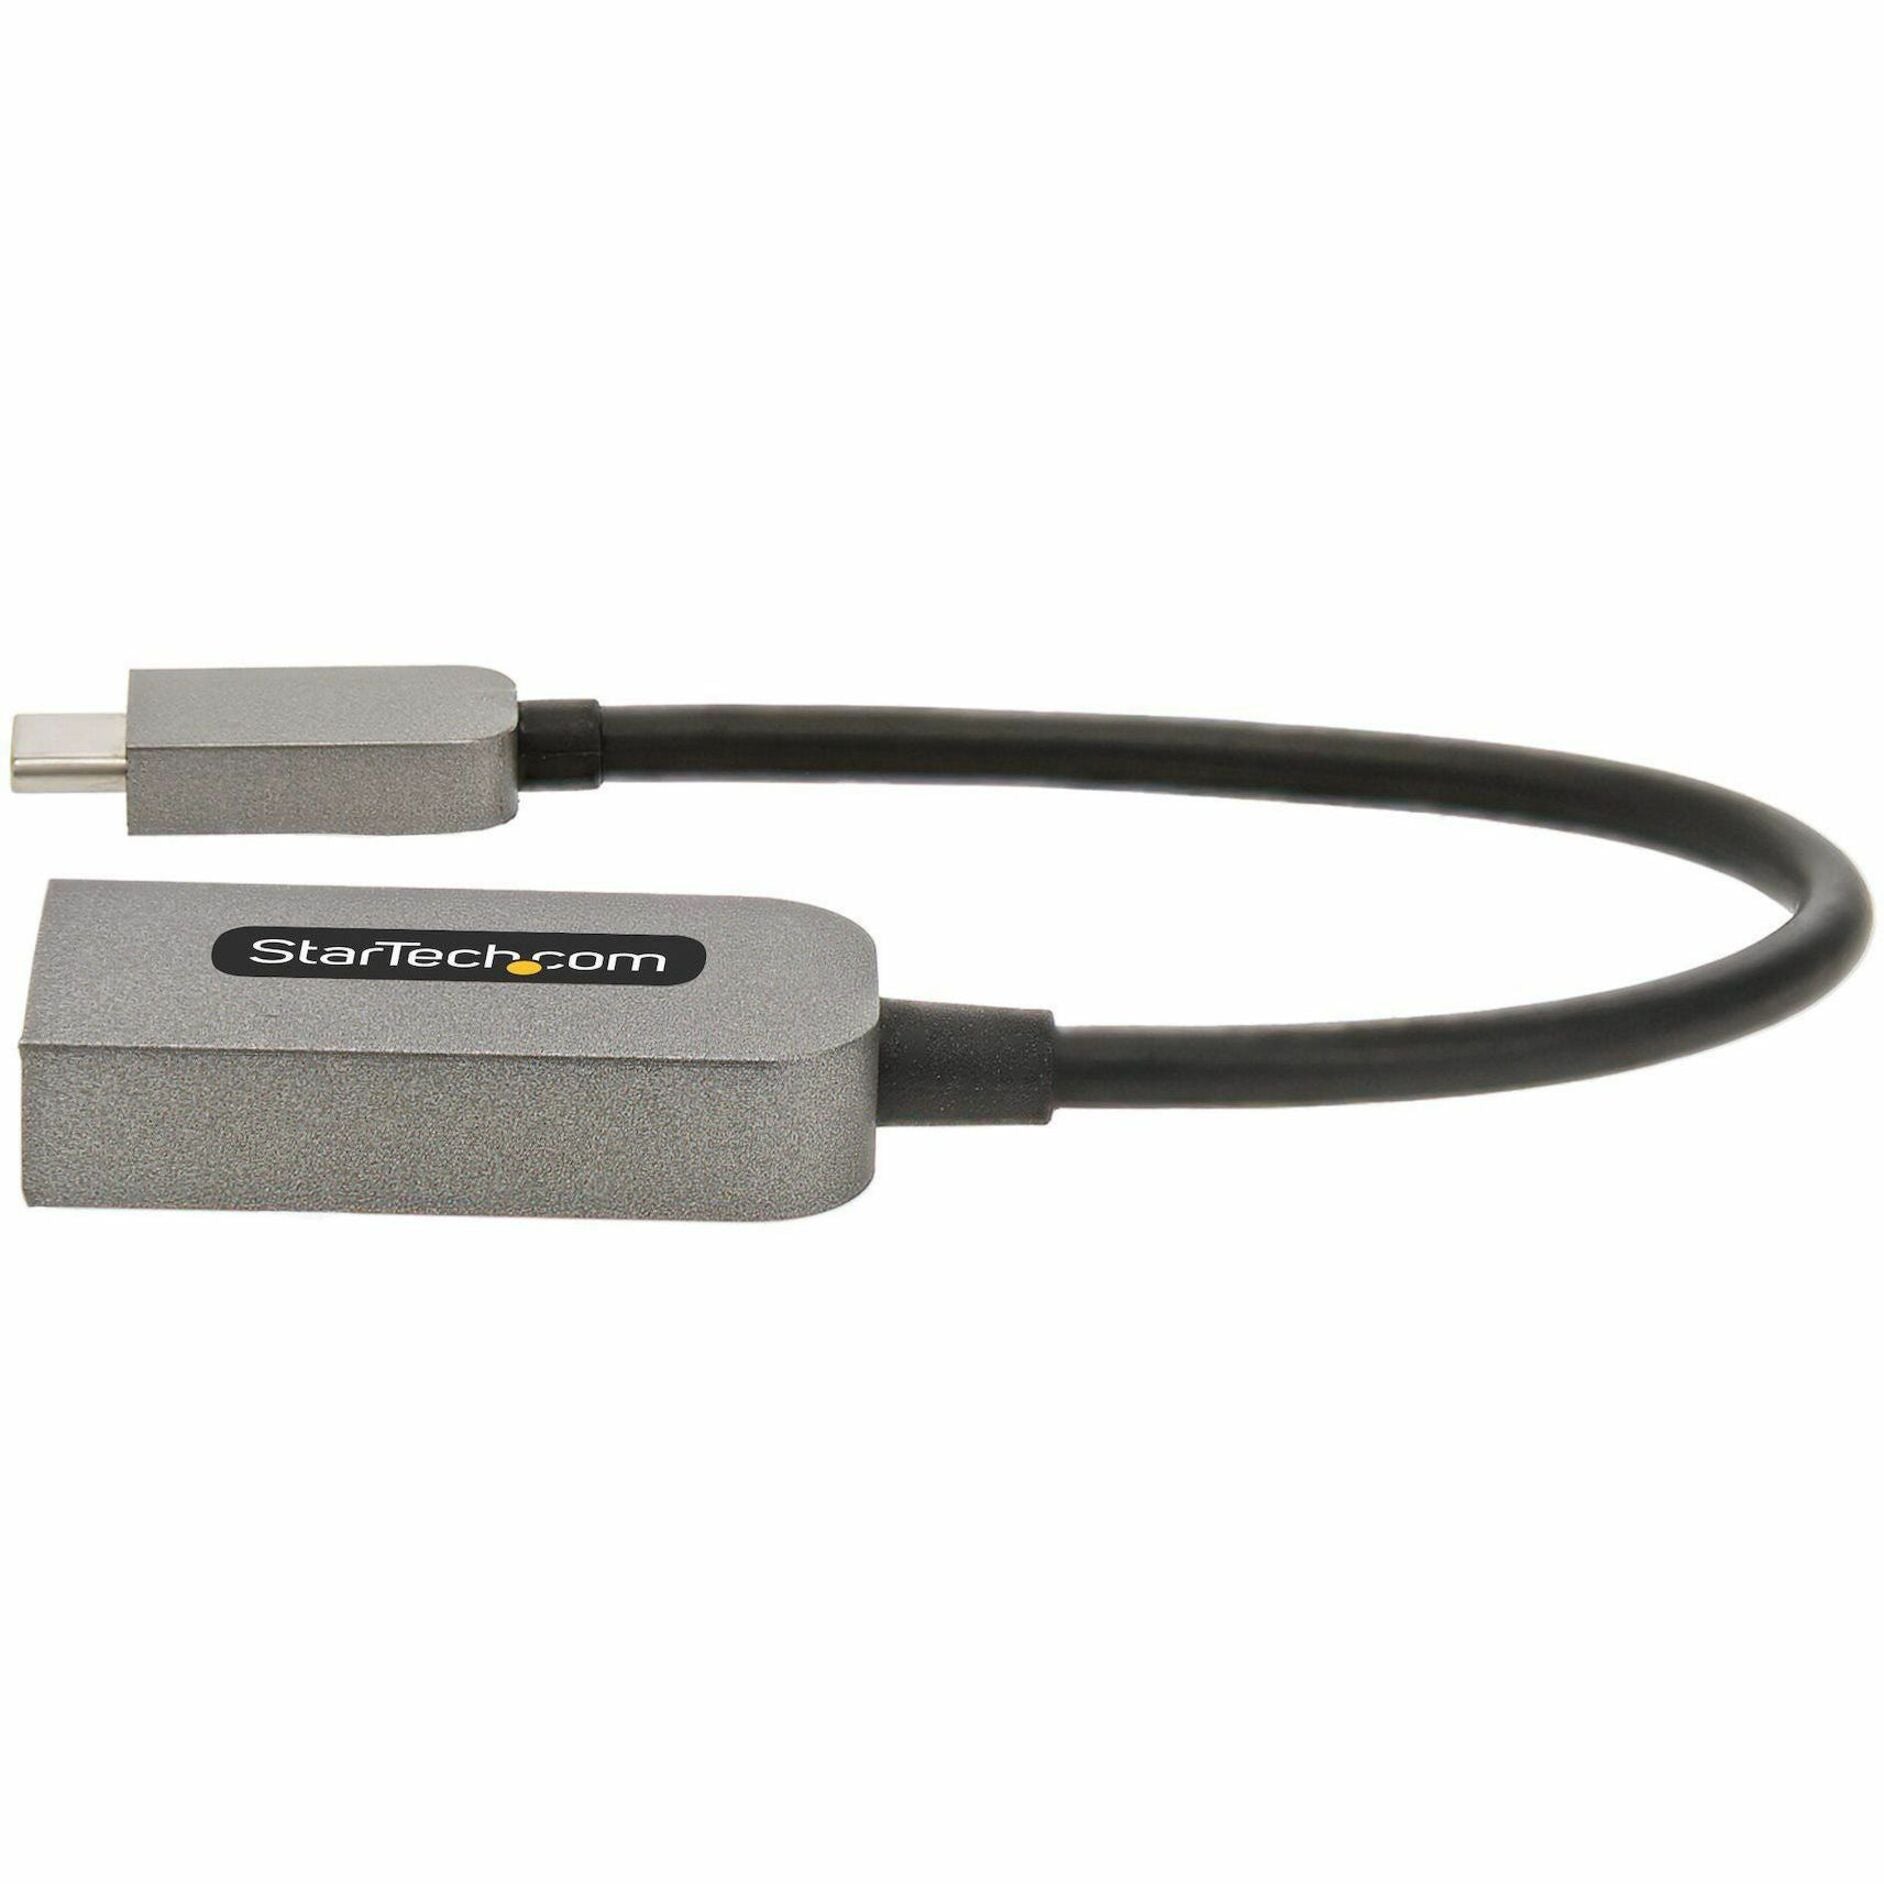 ستارتيك.كوم موصل الصوت / الفيديو HDMI / USB-C USBC-HDMI-CDP2HD4K60 ، 4K 60 هرتز ، HDR10